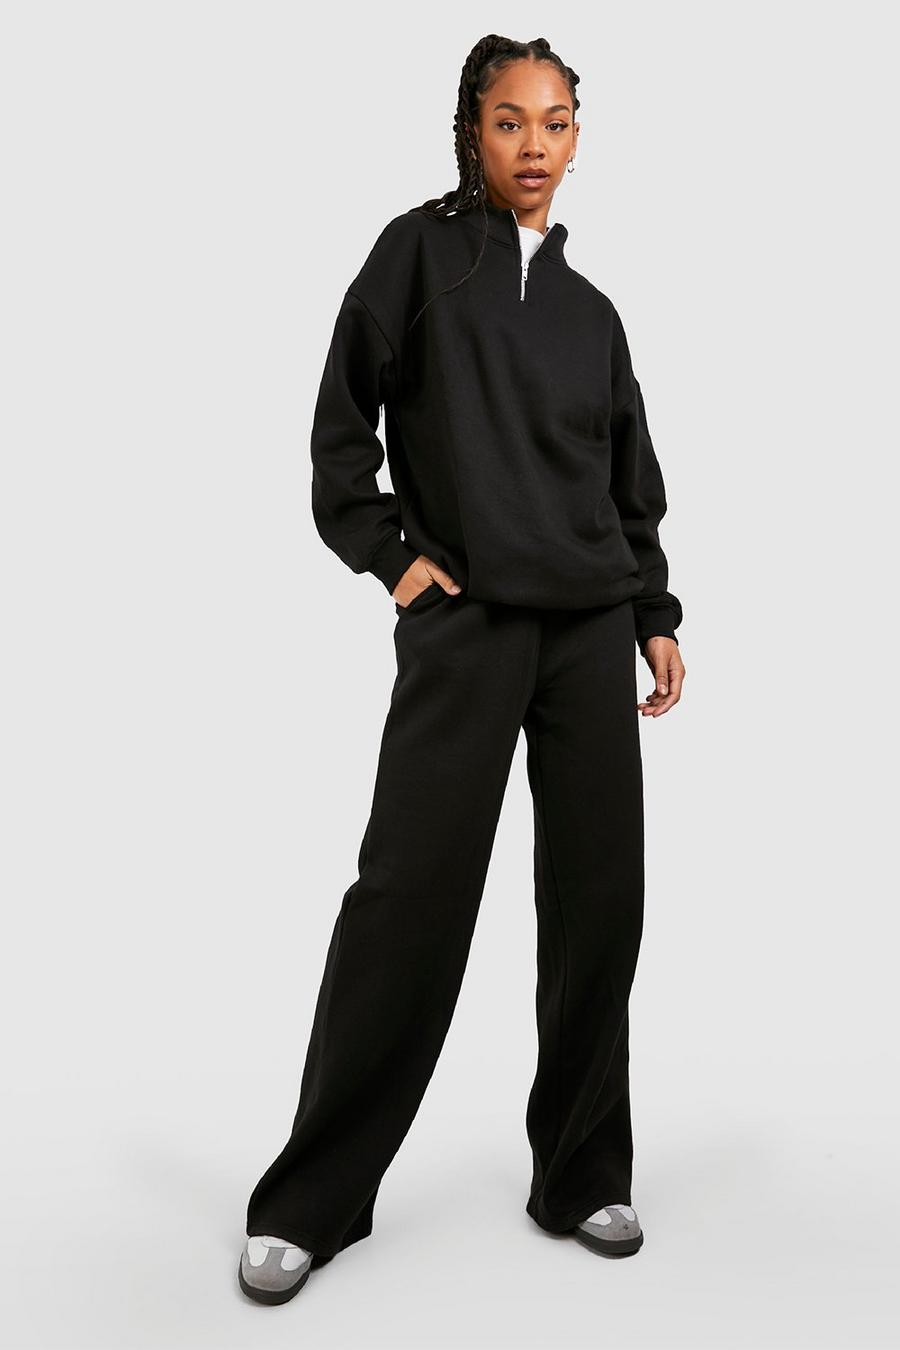 Pantalón deportivo Tall básico ancho, Black